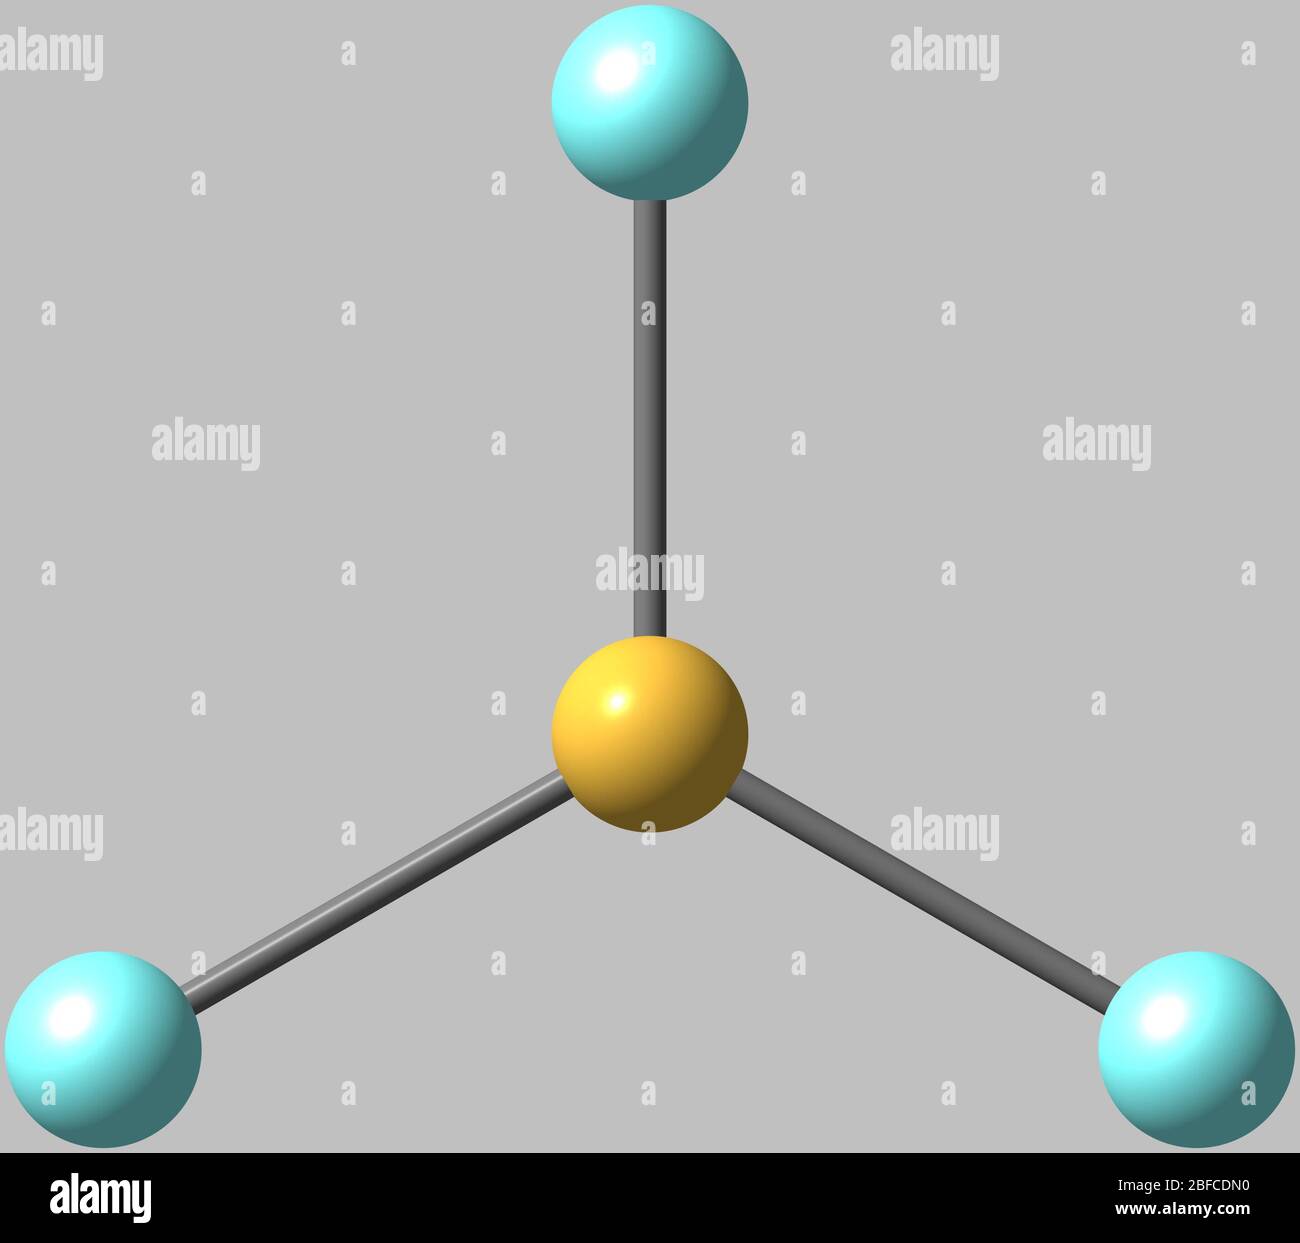 Bortrifluorid ist die anorganische Verbindung mit der Formel BF3. Dieses  stechende farblose toxische Gas bildet weiße Dämpfe in feuchter Luft  Stockfotografie - Alamy